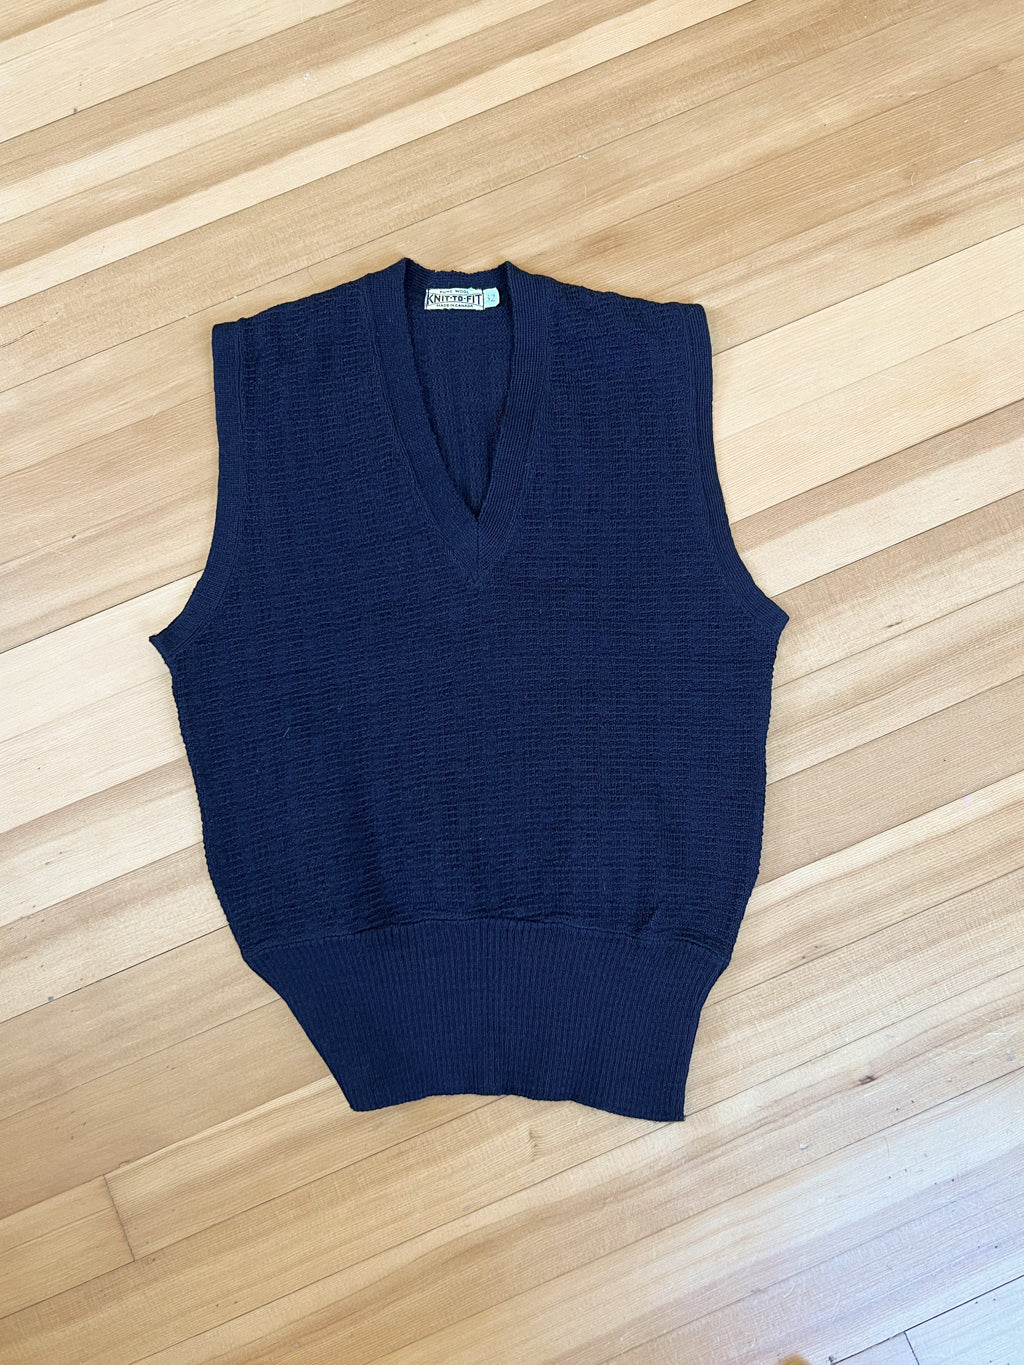 Vintage DEADSTOCK 1940s Knit Vest Top - Navy Blue All-Wool Canadian Sporty Knitwear Sweater Waistcoat - Choose Yours!